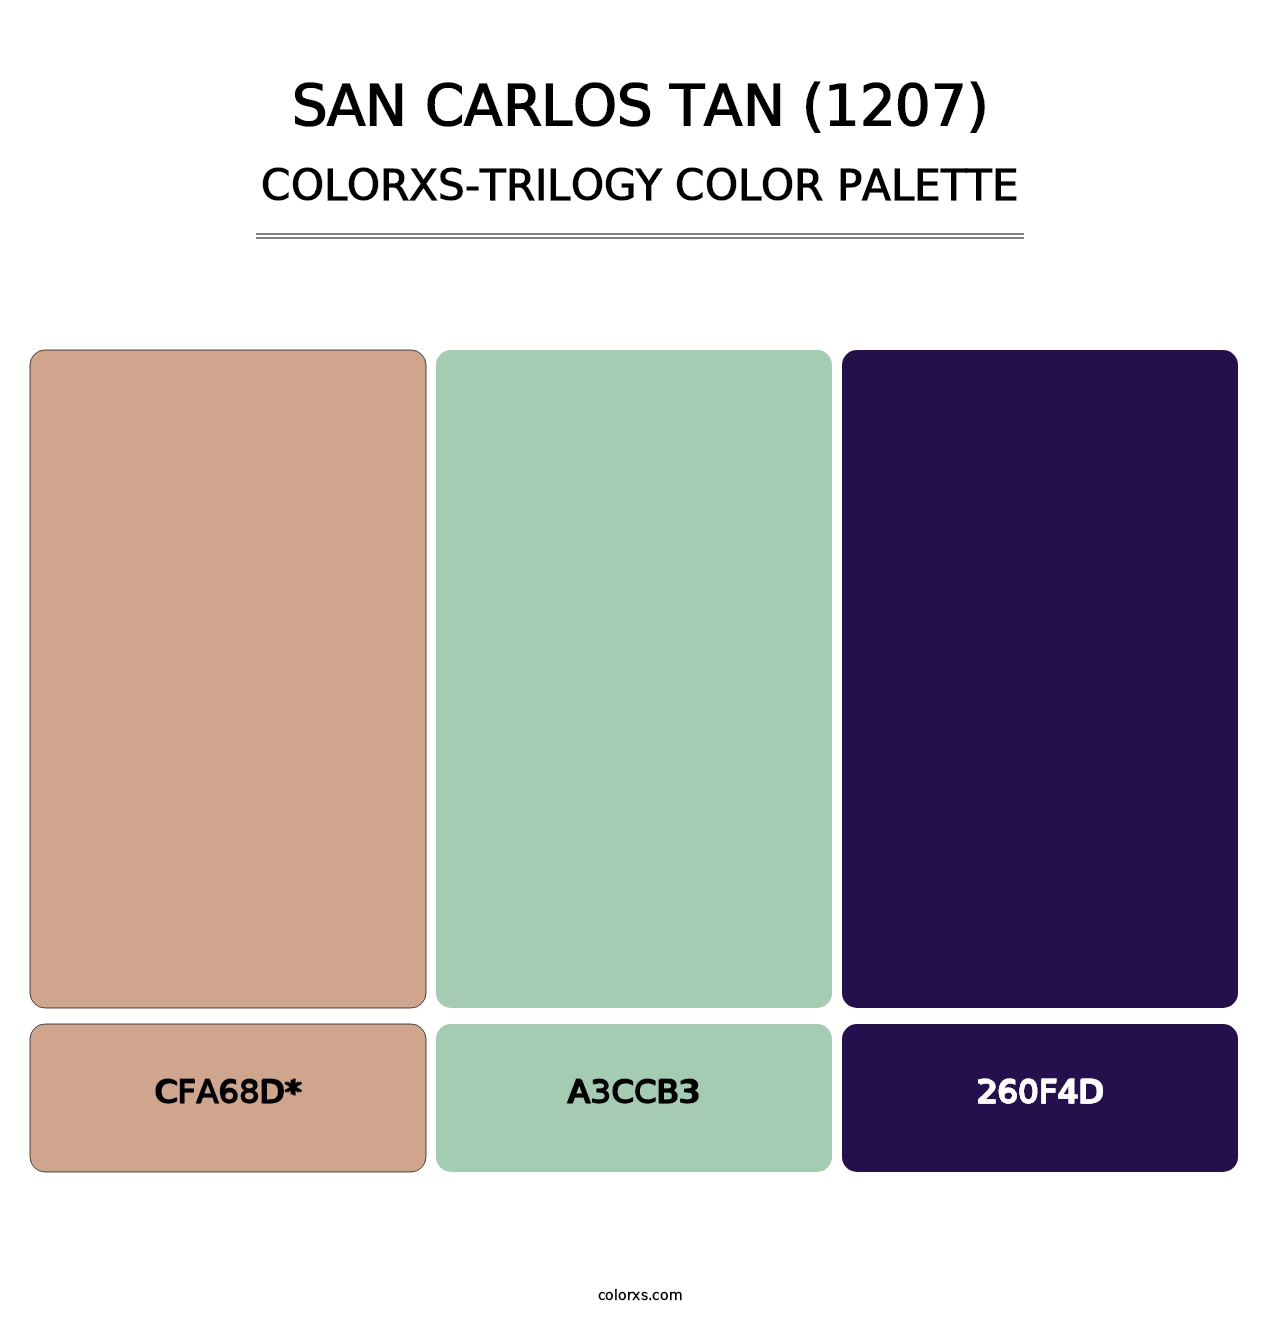 San Carlos Tan (1207) - Colorxs Trilogy Palette